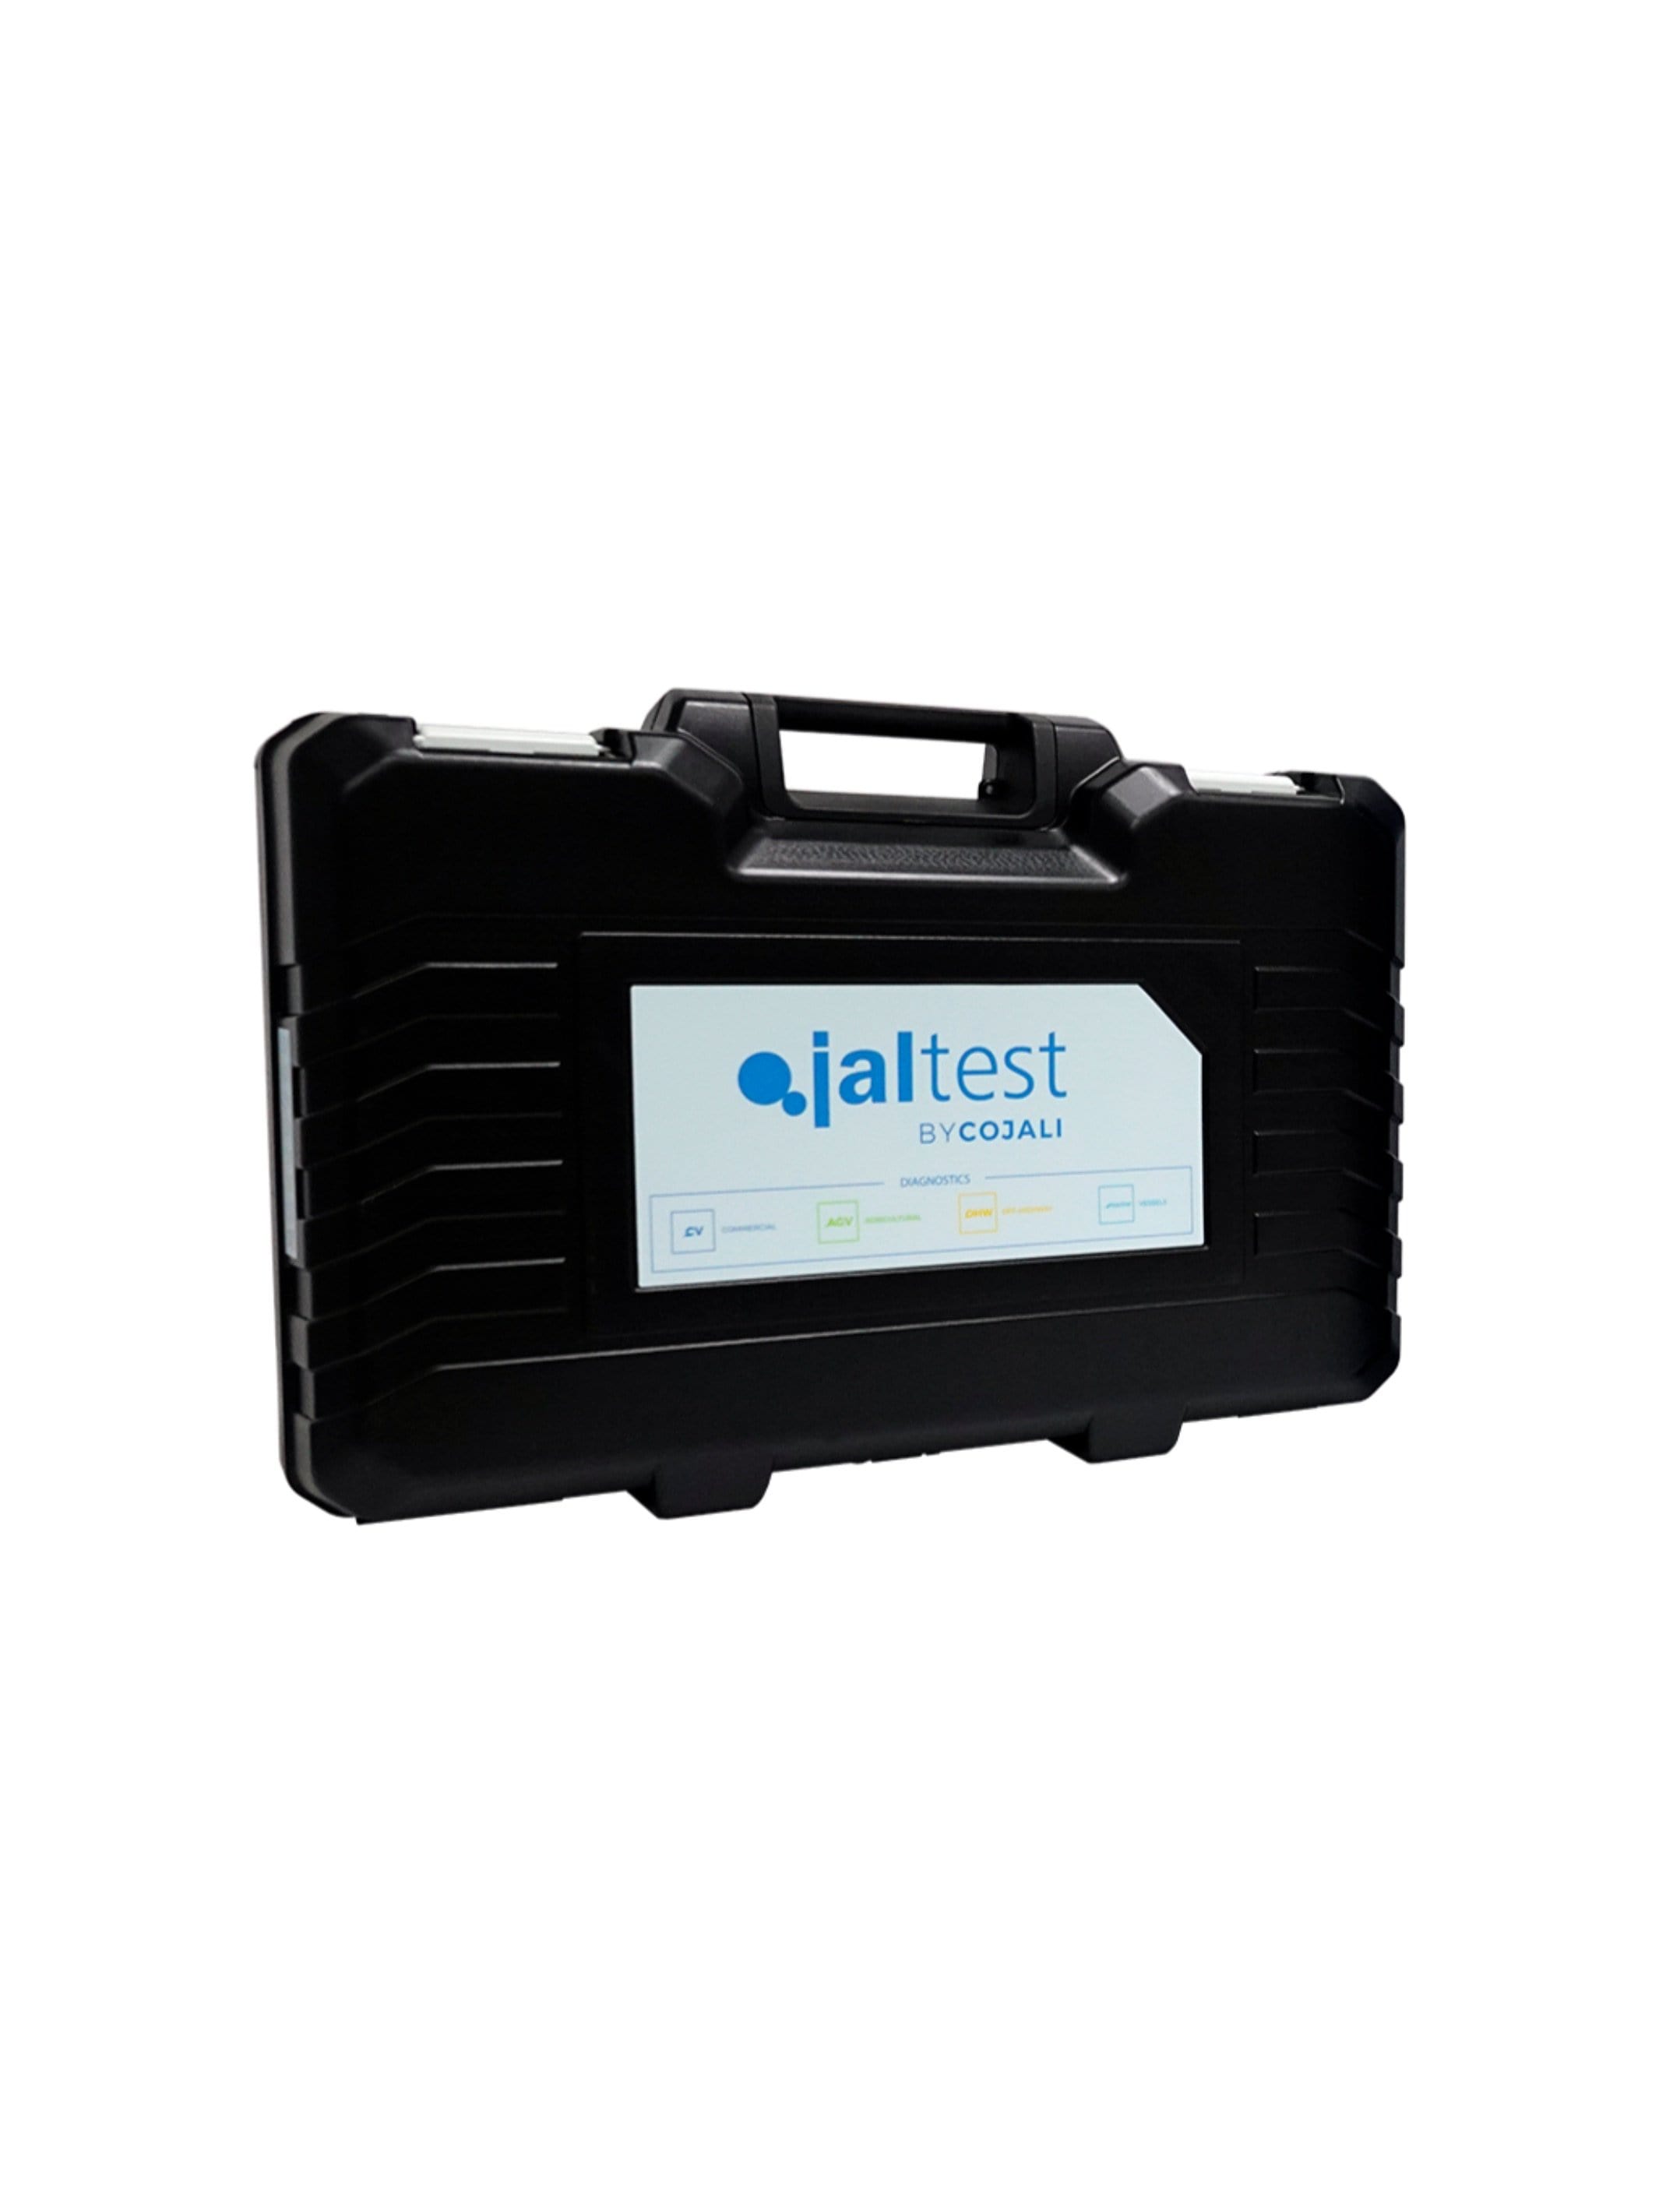 70003015 Transport Hardcase - Jaltest Marine Inboard Motor Diagnostic Tool